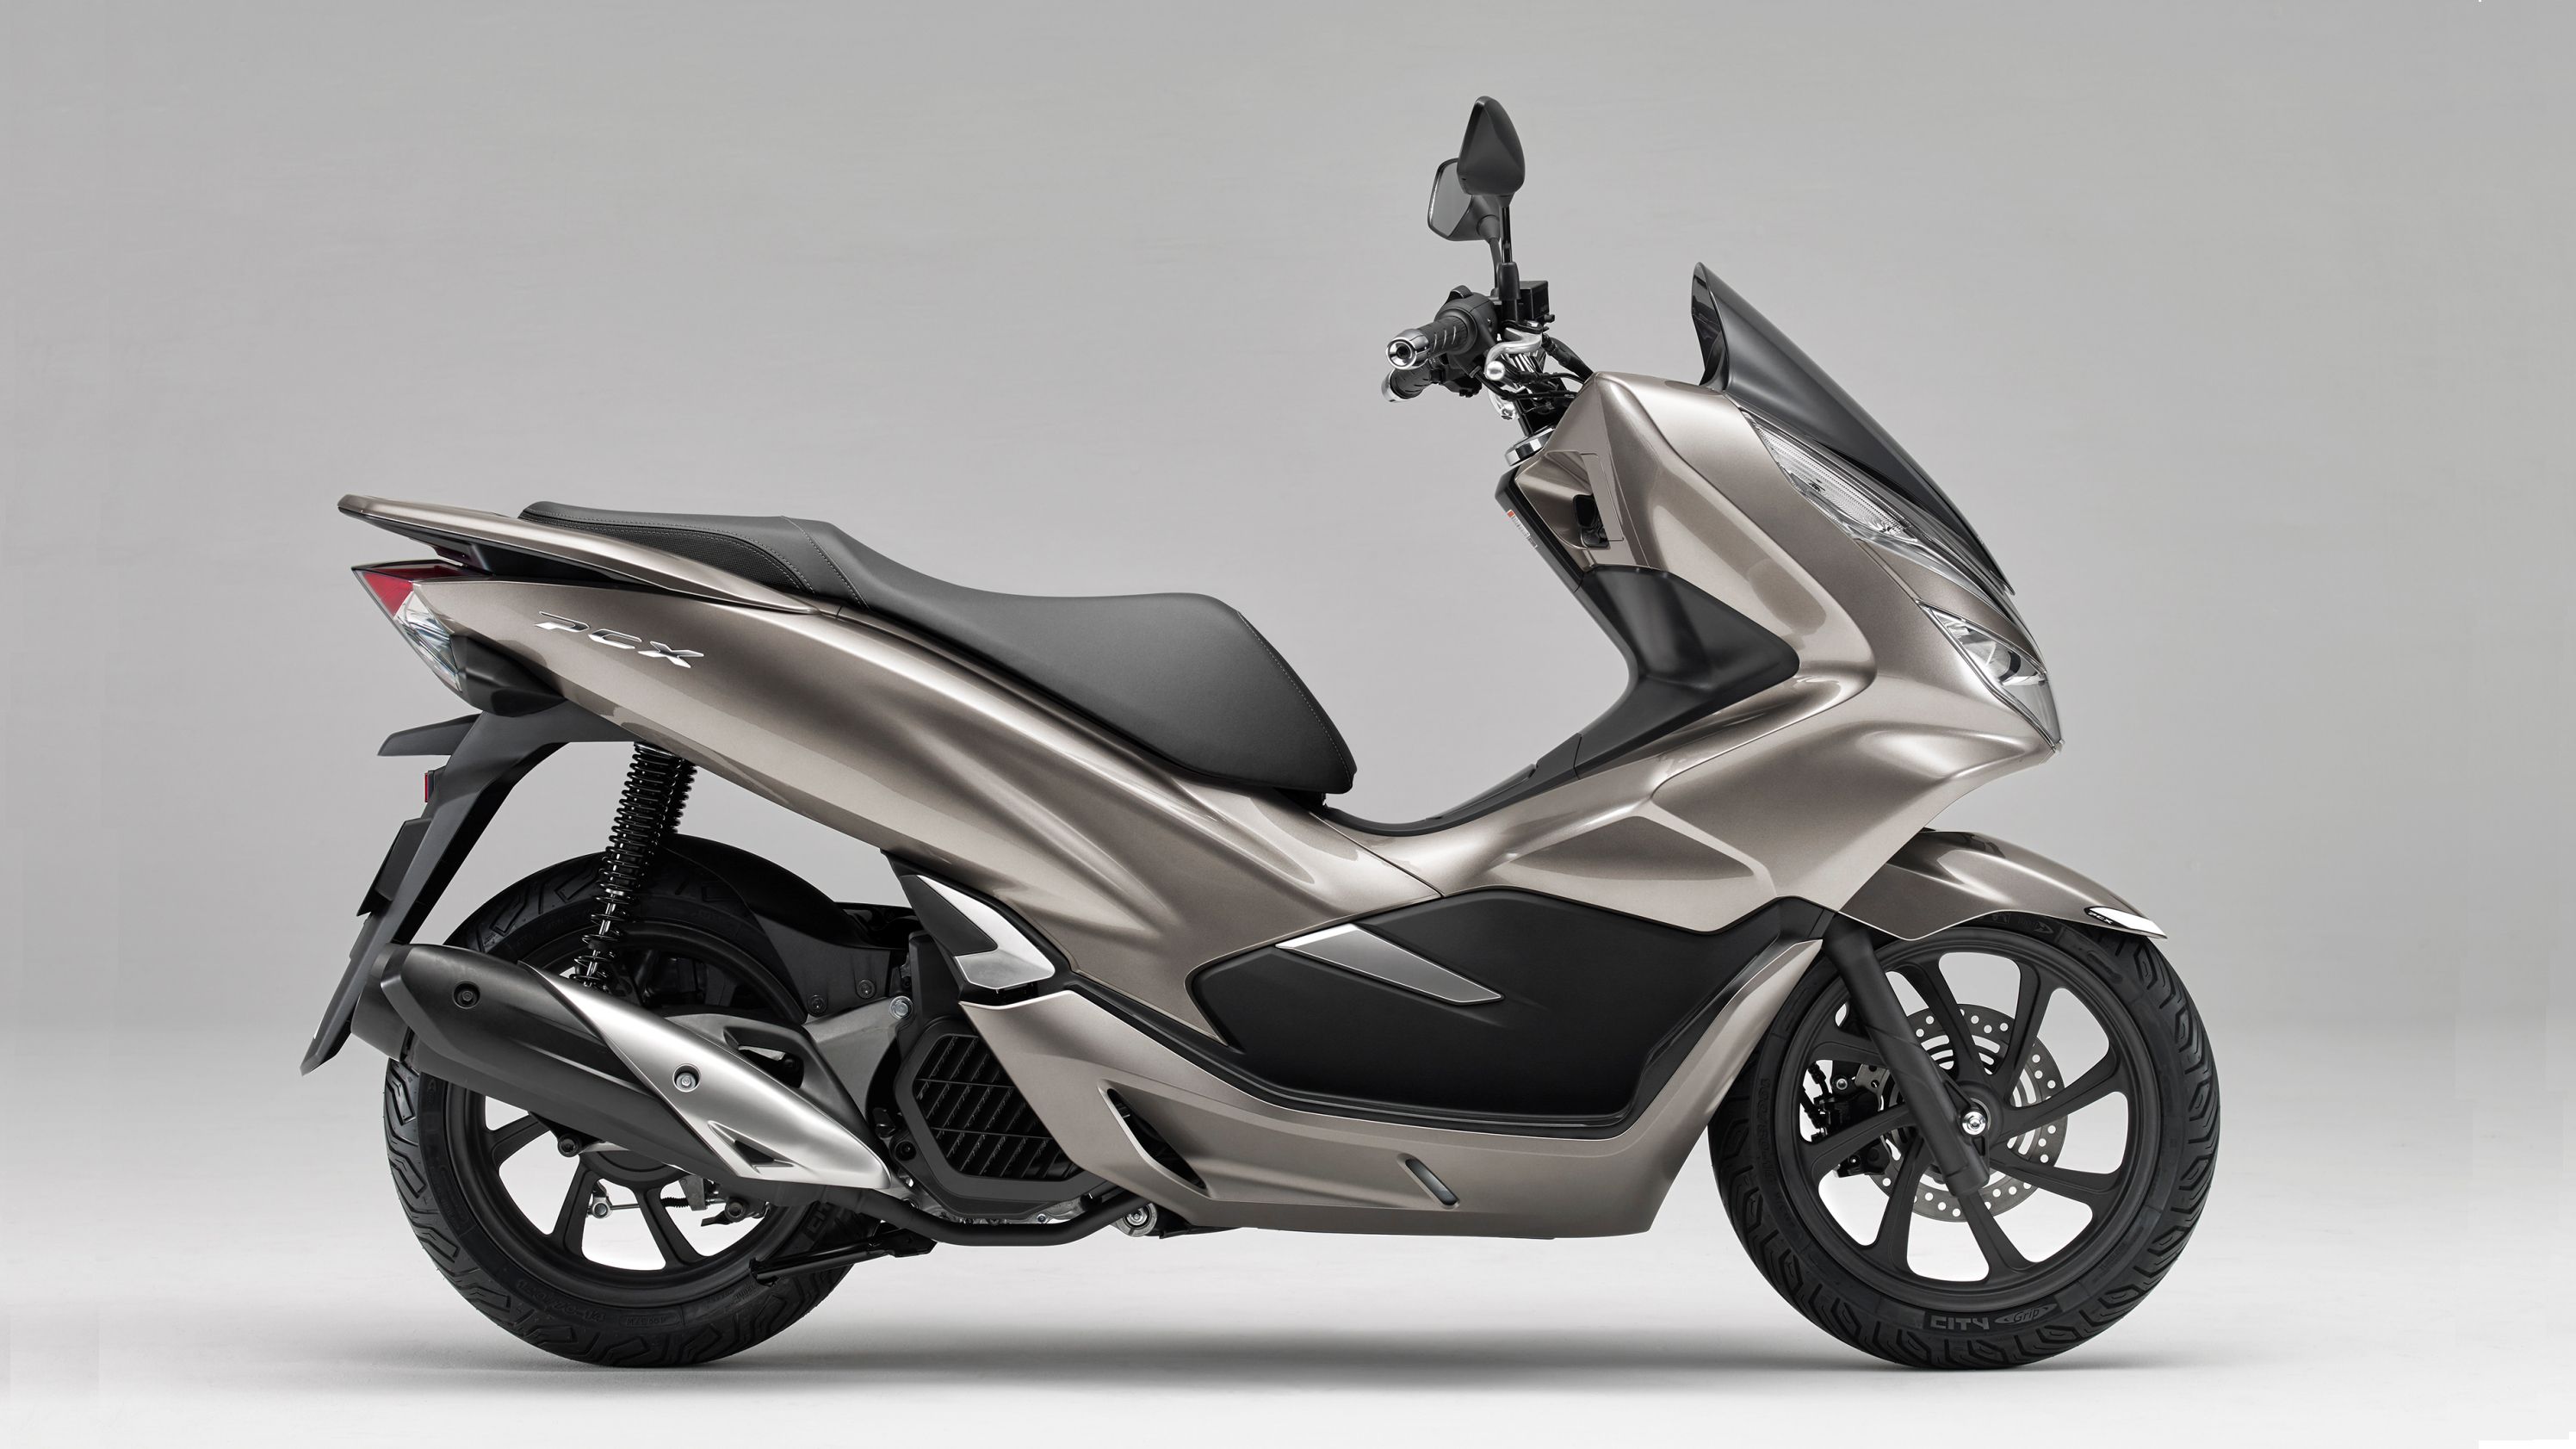 2019 - 2020 Honda PCX150